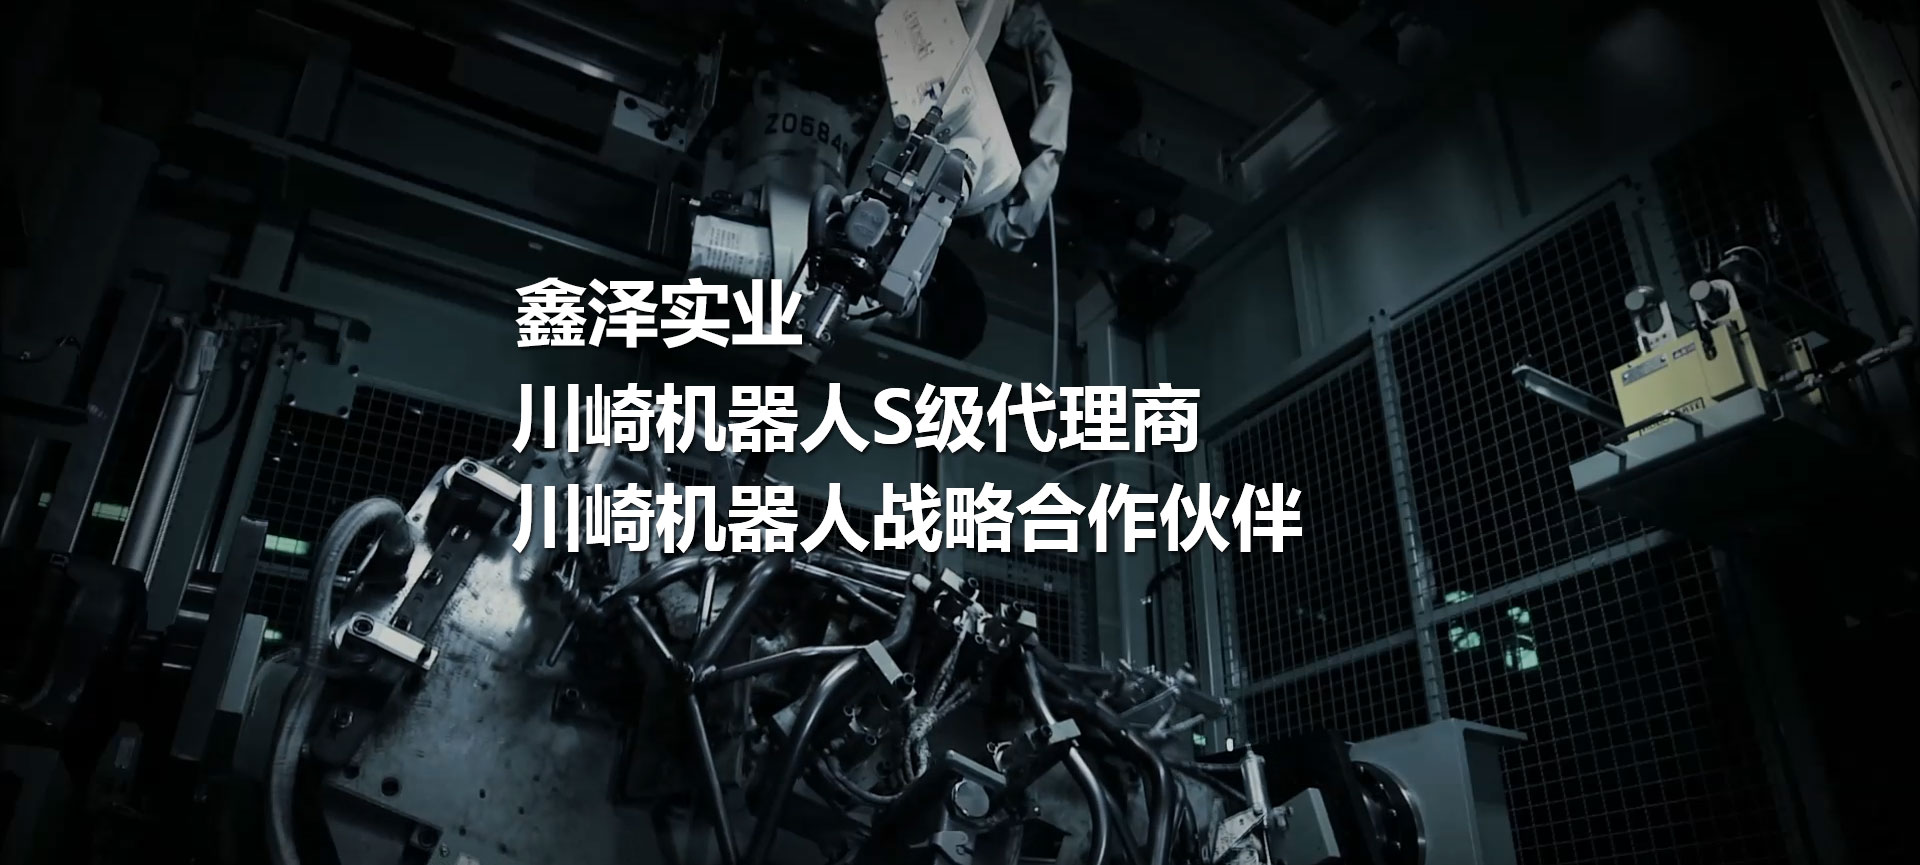 川崎机器人、喷涂机器人、焊接机器人、码垛机器人、工业机器人、搬运机器人